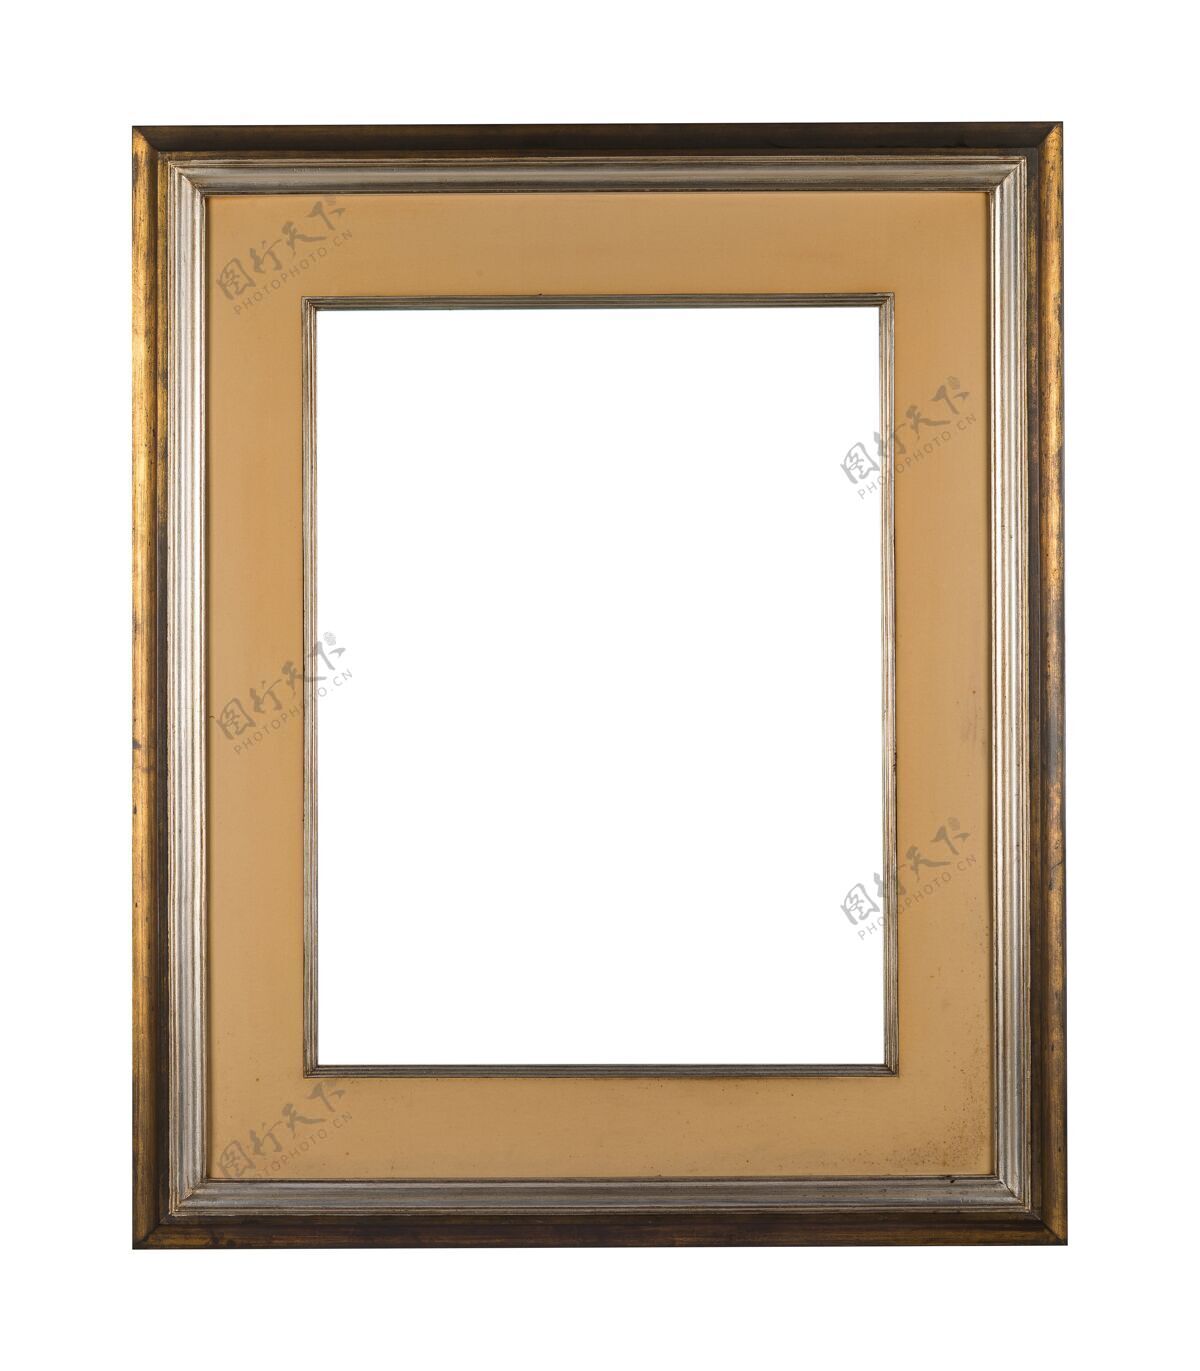 装饰复古的空白框架 棕色木质边框 白色背景空白肖像边缘